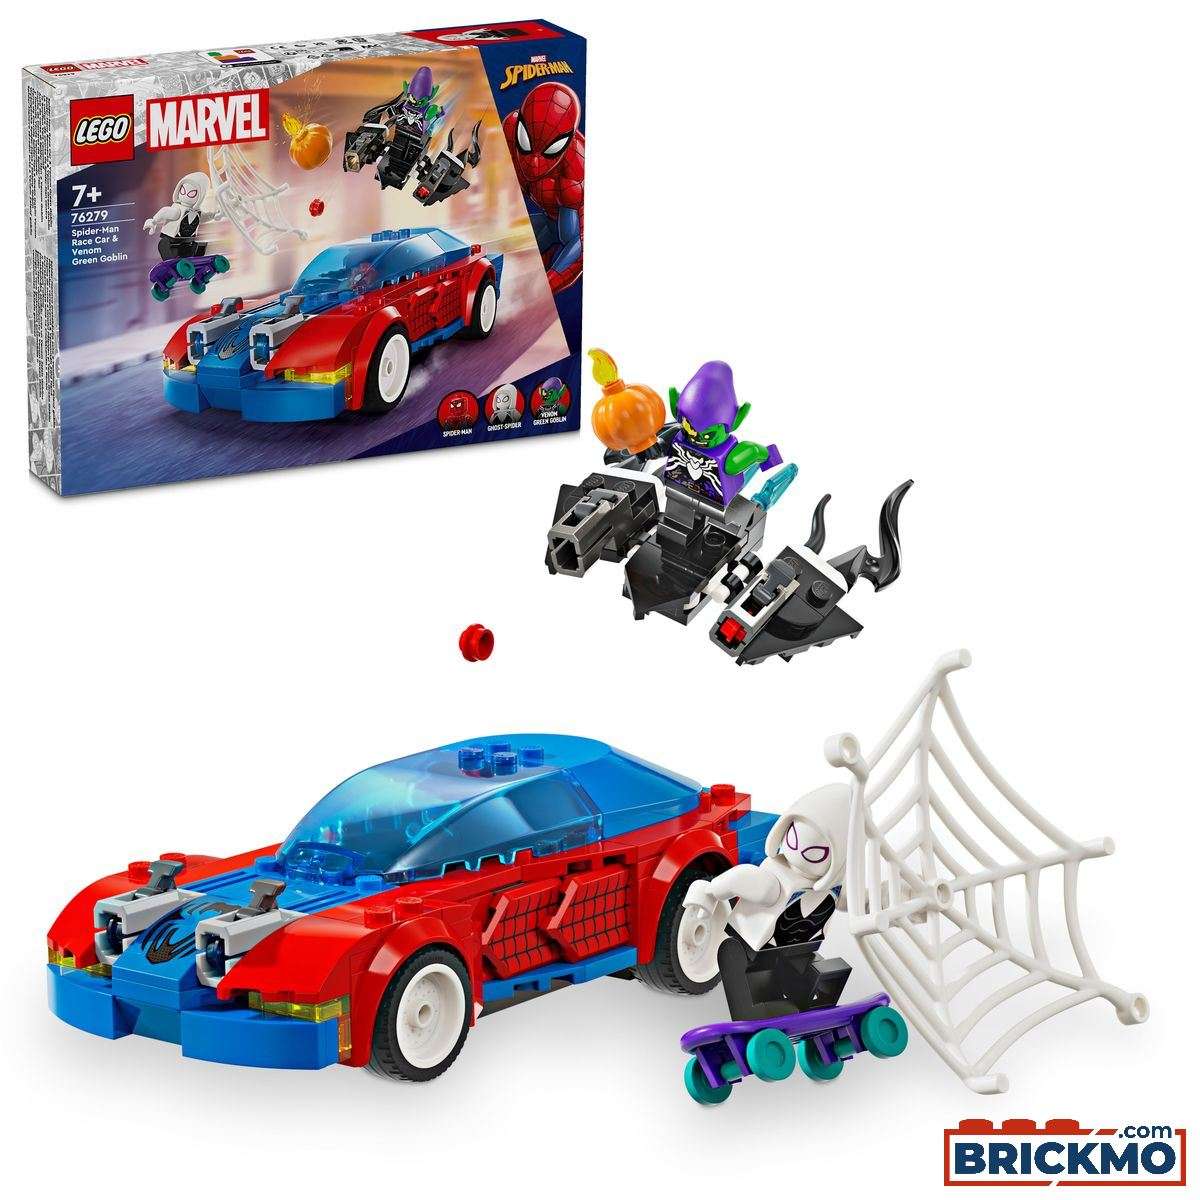 LEGO Marvel Super Heroes 76279 Spider-Man racewagen en Venom Green Goblin 76279